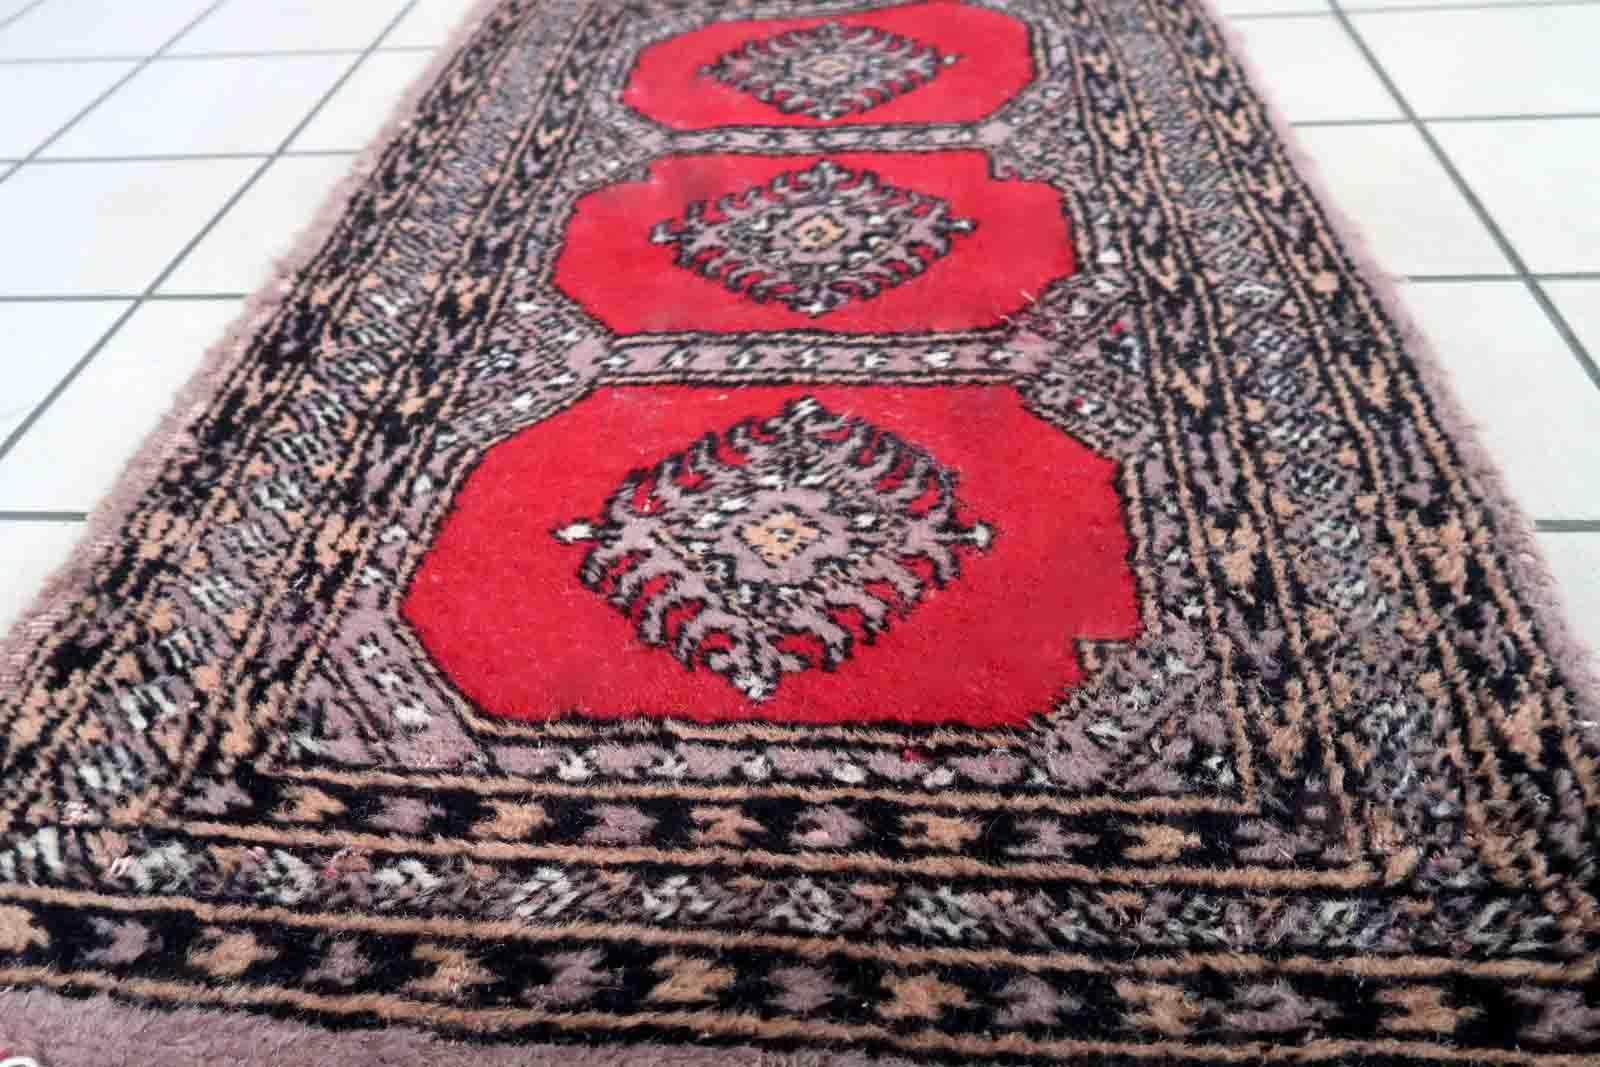 Handgefertigter usbekischer Buchara-Teppich in traditionellem Design. Der Teppich ist vom Ende des 20. Jahrhunderts, er ist im Originalzustand, hat einige Altersspuren.

-zustand: original gut,

-etwa: 1970er Jahre,

-größe: 2' x 3.3' (63cm x